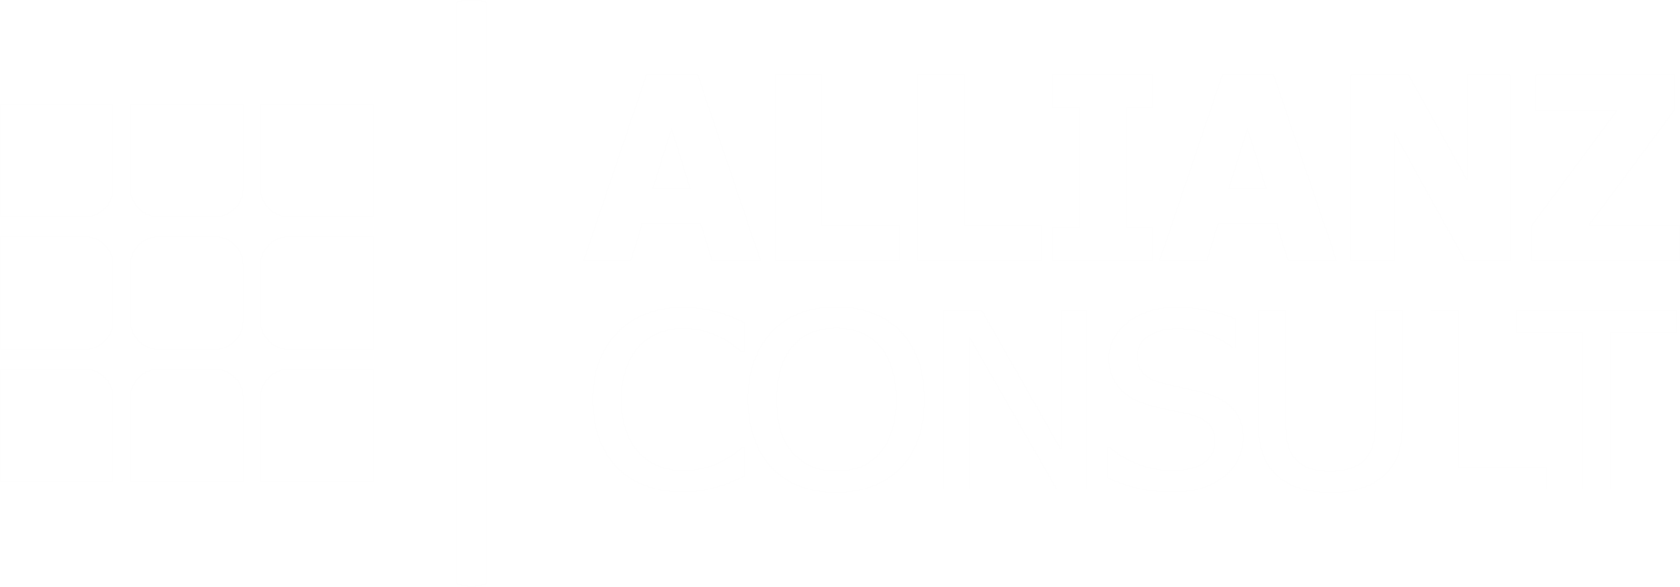 Allianz Consult